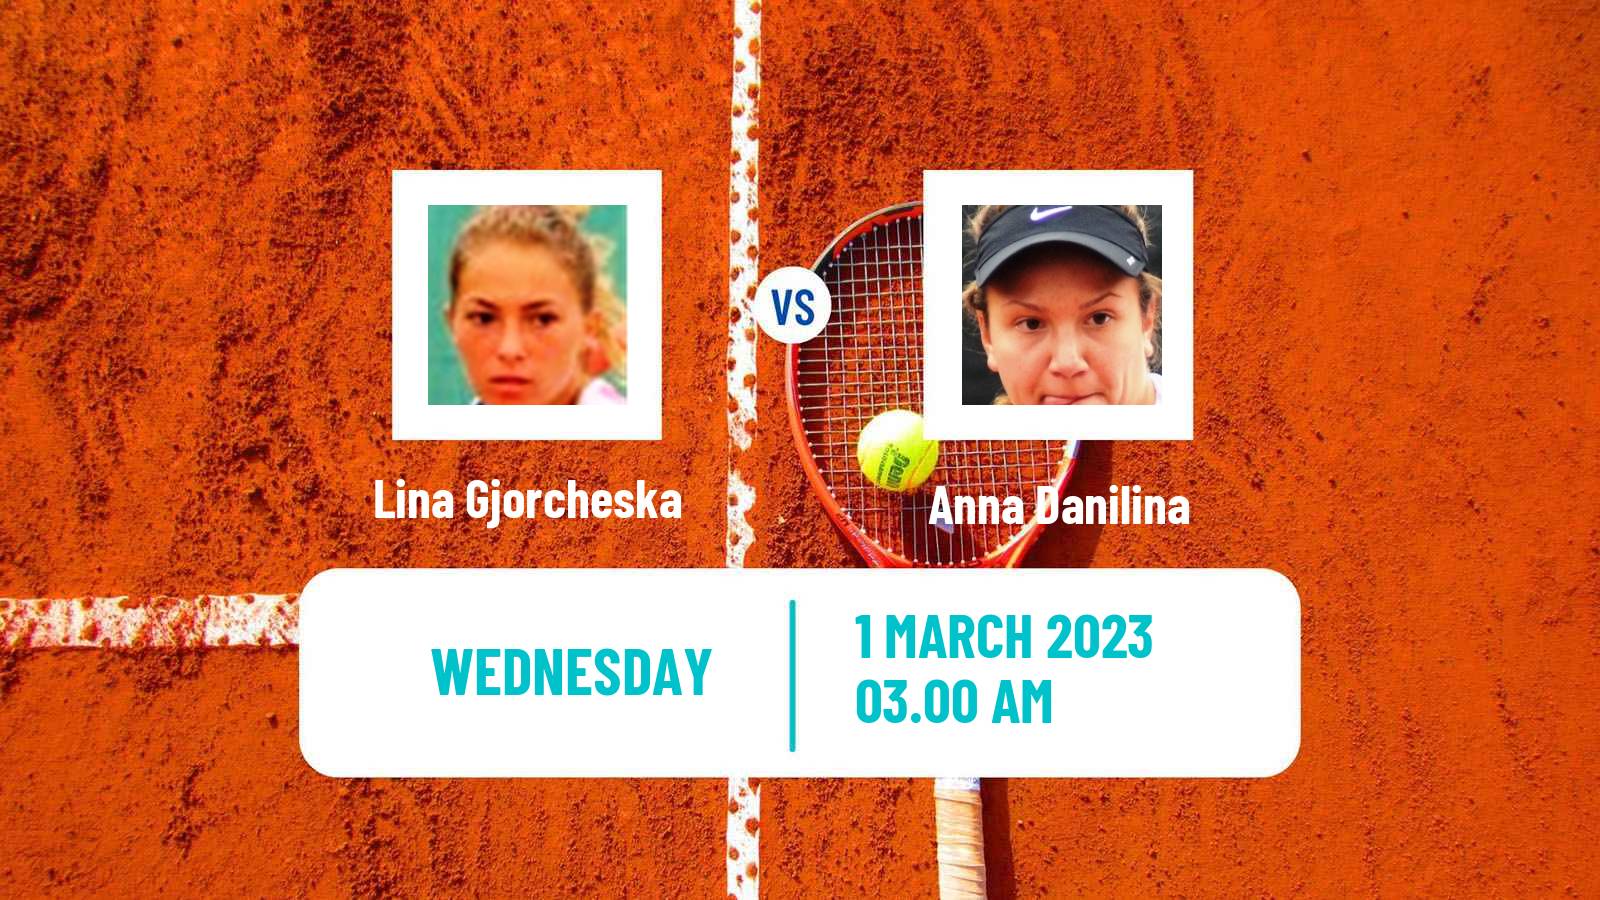 Tennis ITF Tournaments Lina Gjorcheska - Anna Danilina